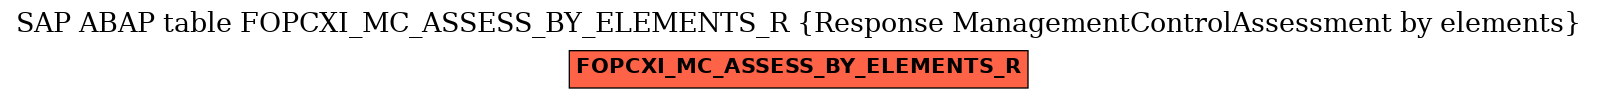 E-R Diagram for table FOPCXI_MC_ASSESS_BY_ELEMENTS_R (Response ManagementControlAssessment by elements)